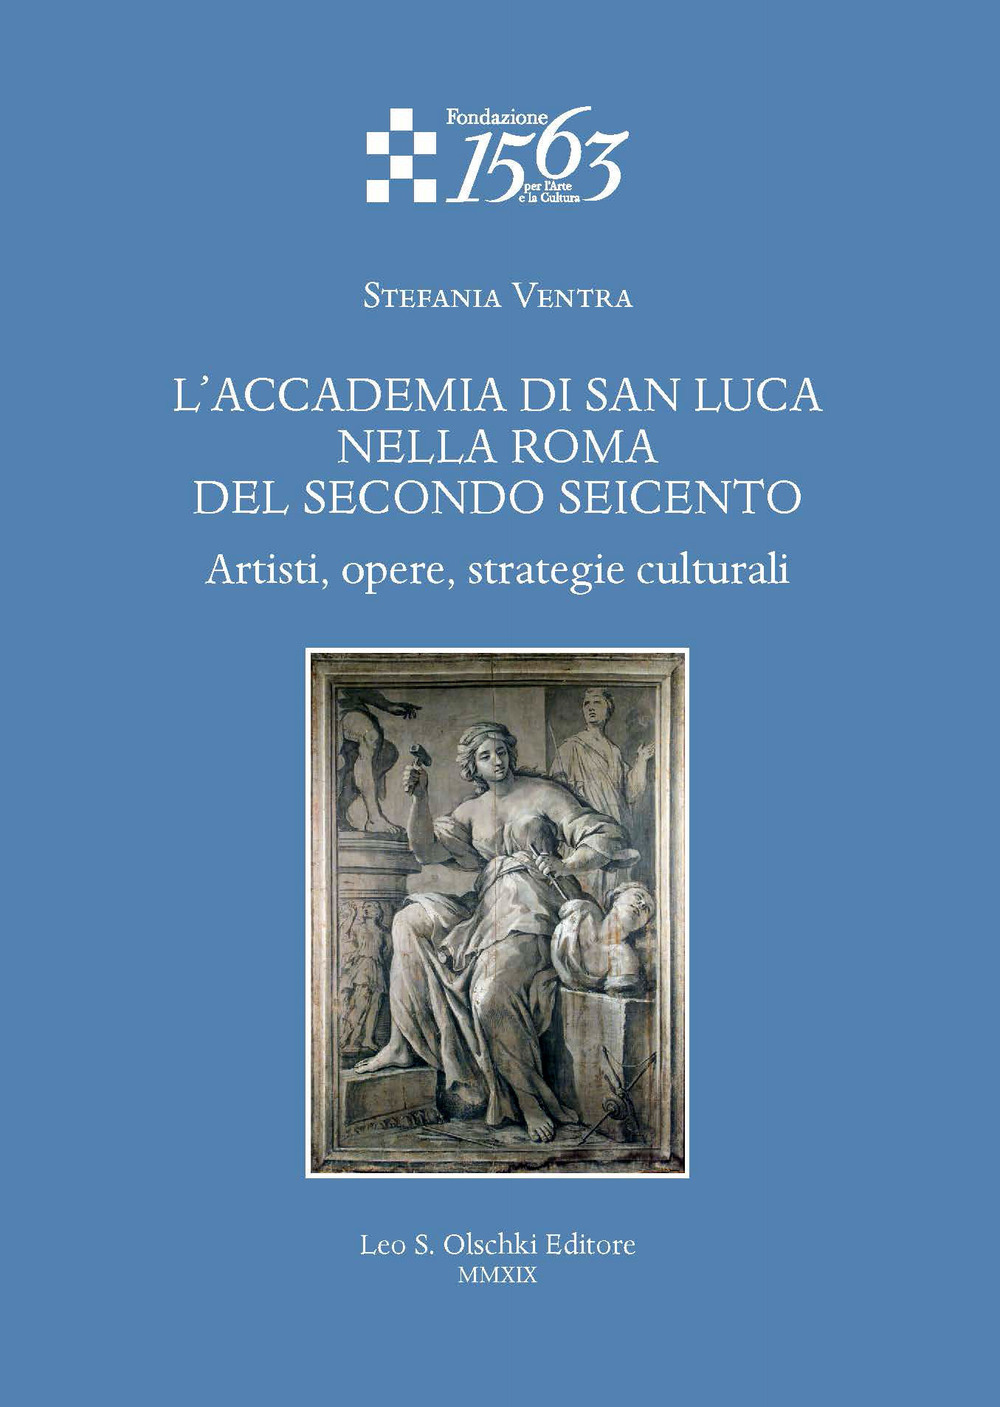 L'Accademia di San Luca nella Roma del secondo Seicento. Artisti, opere, strategie culturali